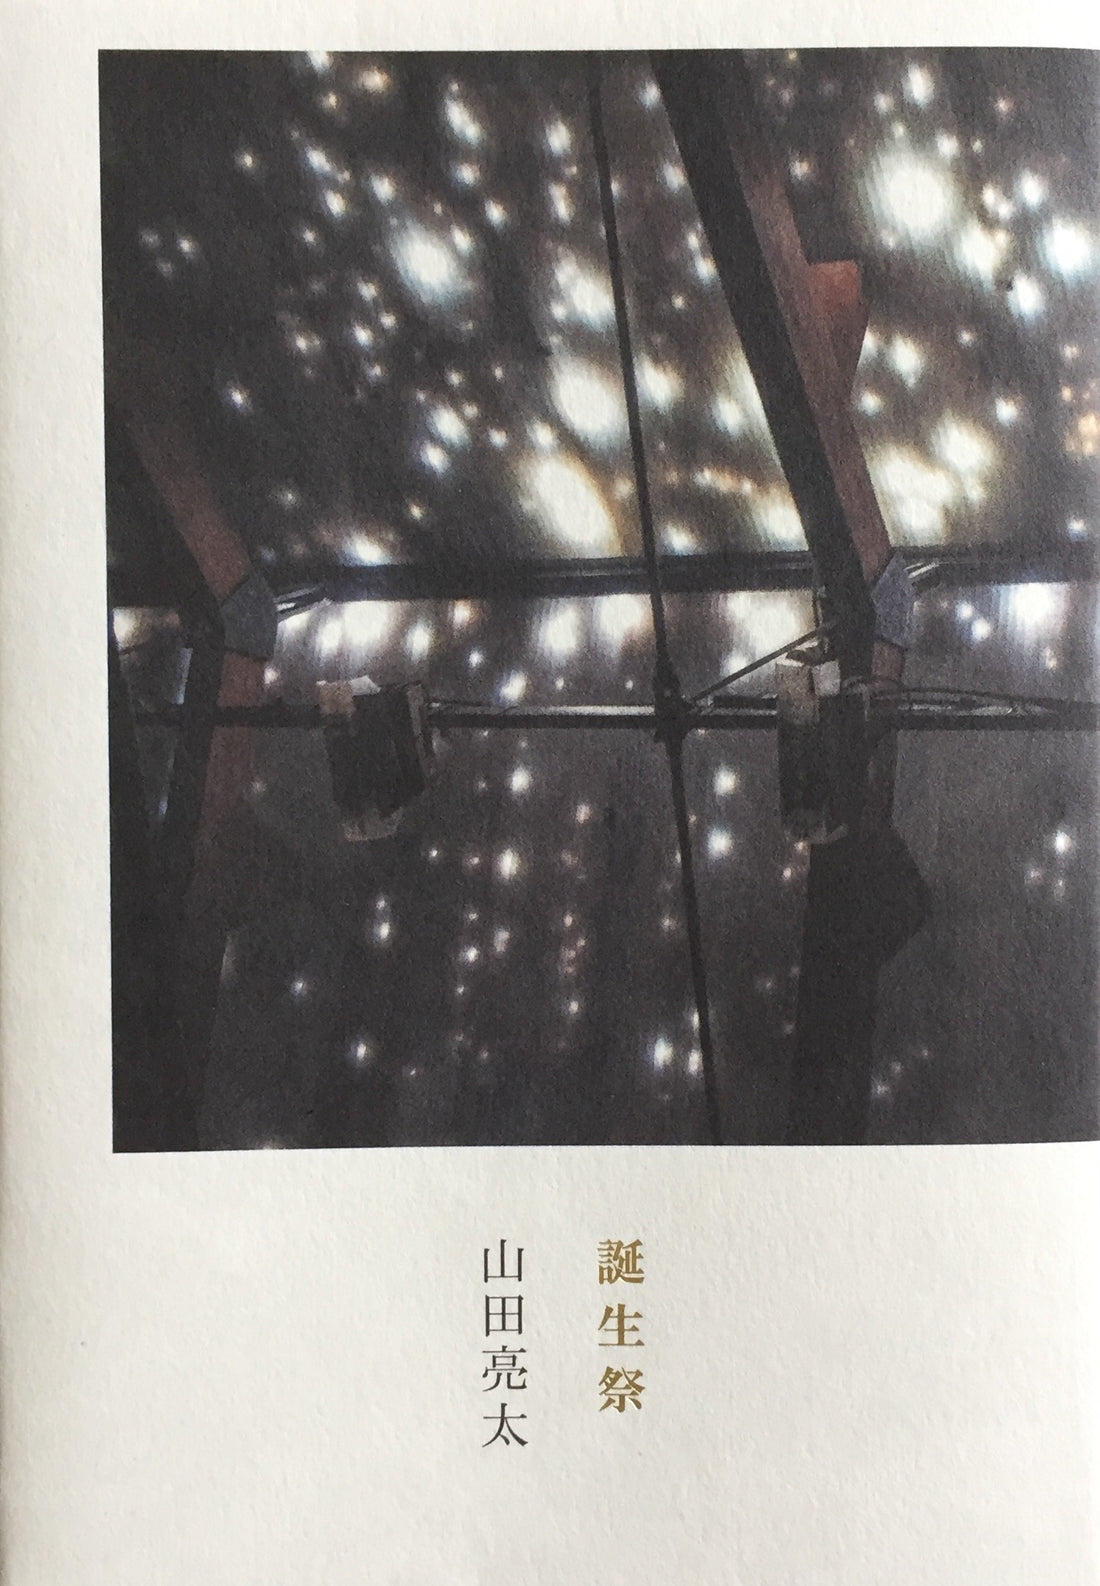 本のタイトル「誕生祭」山田亮太